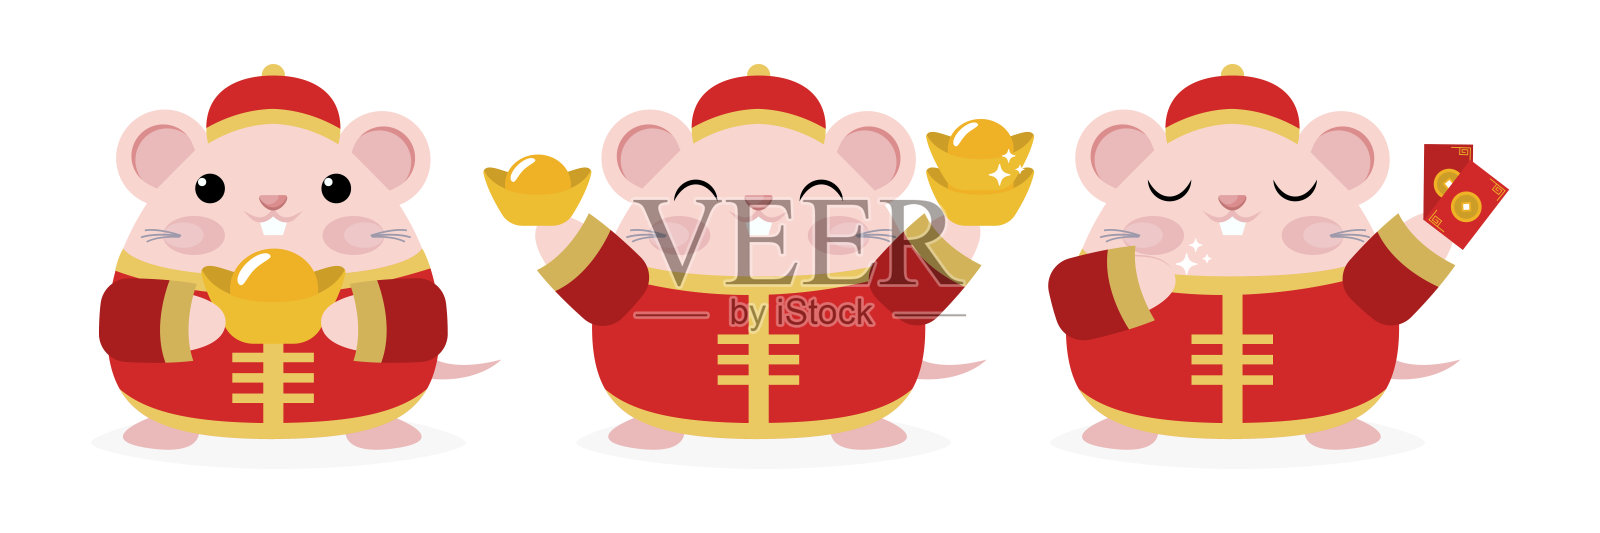 一套可爱的小老鼠在红色服装卡通人物向量新年2020年的老鼠年插画图片素材